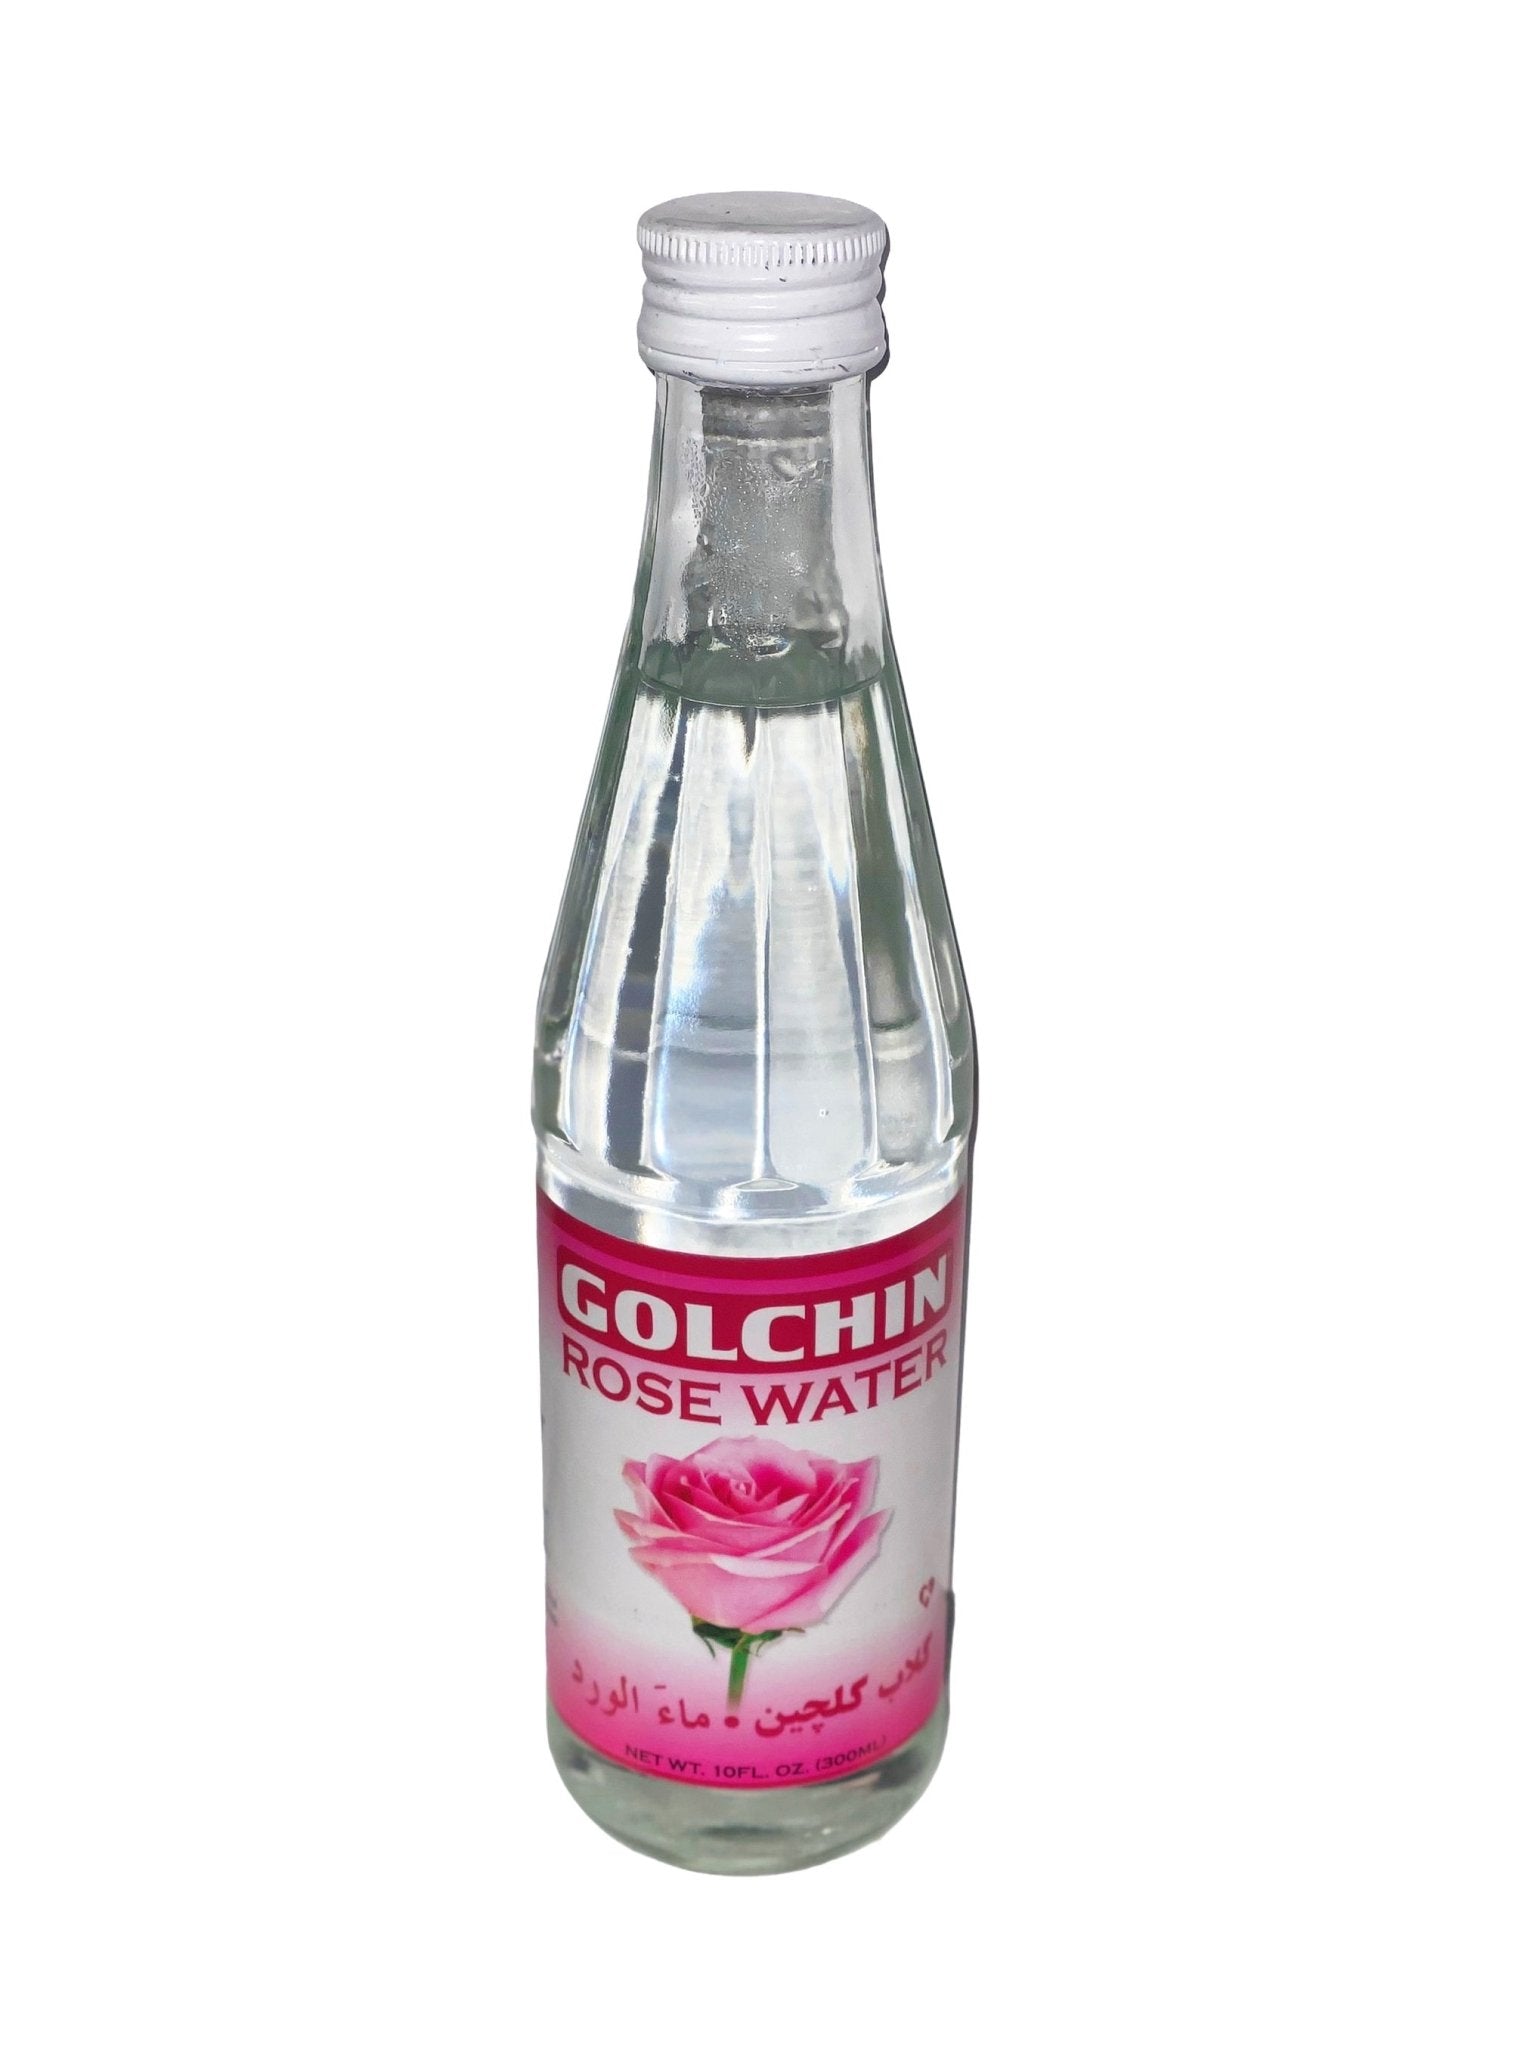 Pars Rose Water (Golab) 10 FL OZ - Yekta Persian Market & Kabob Counter